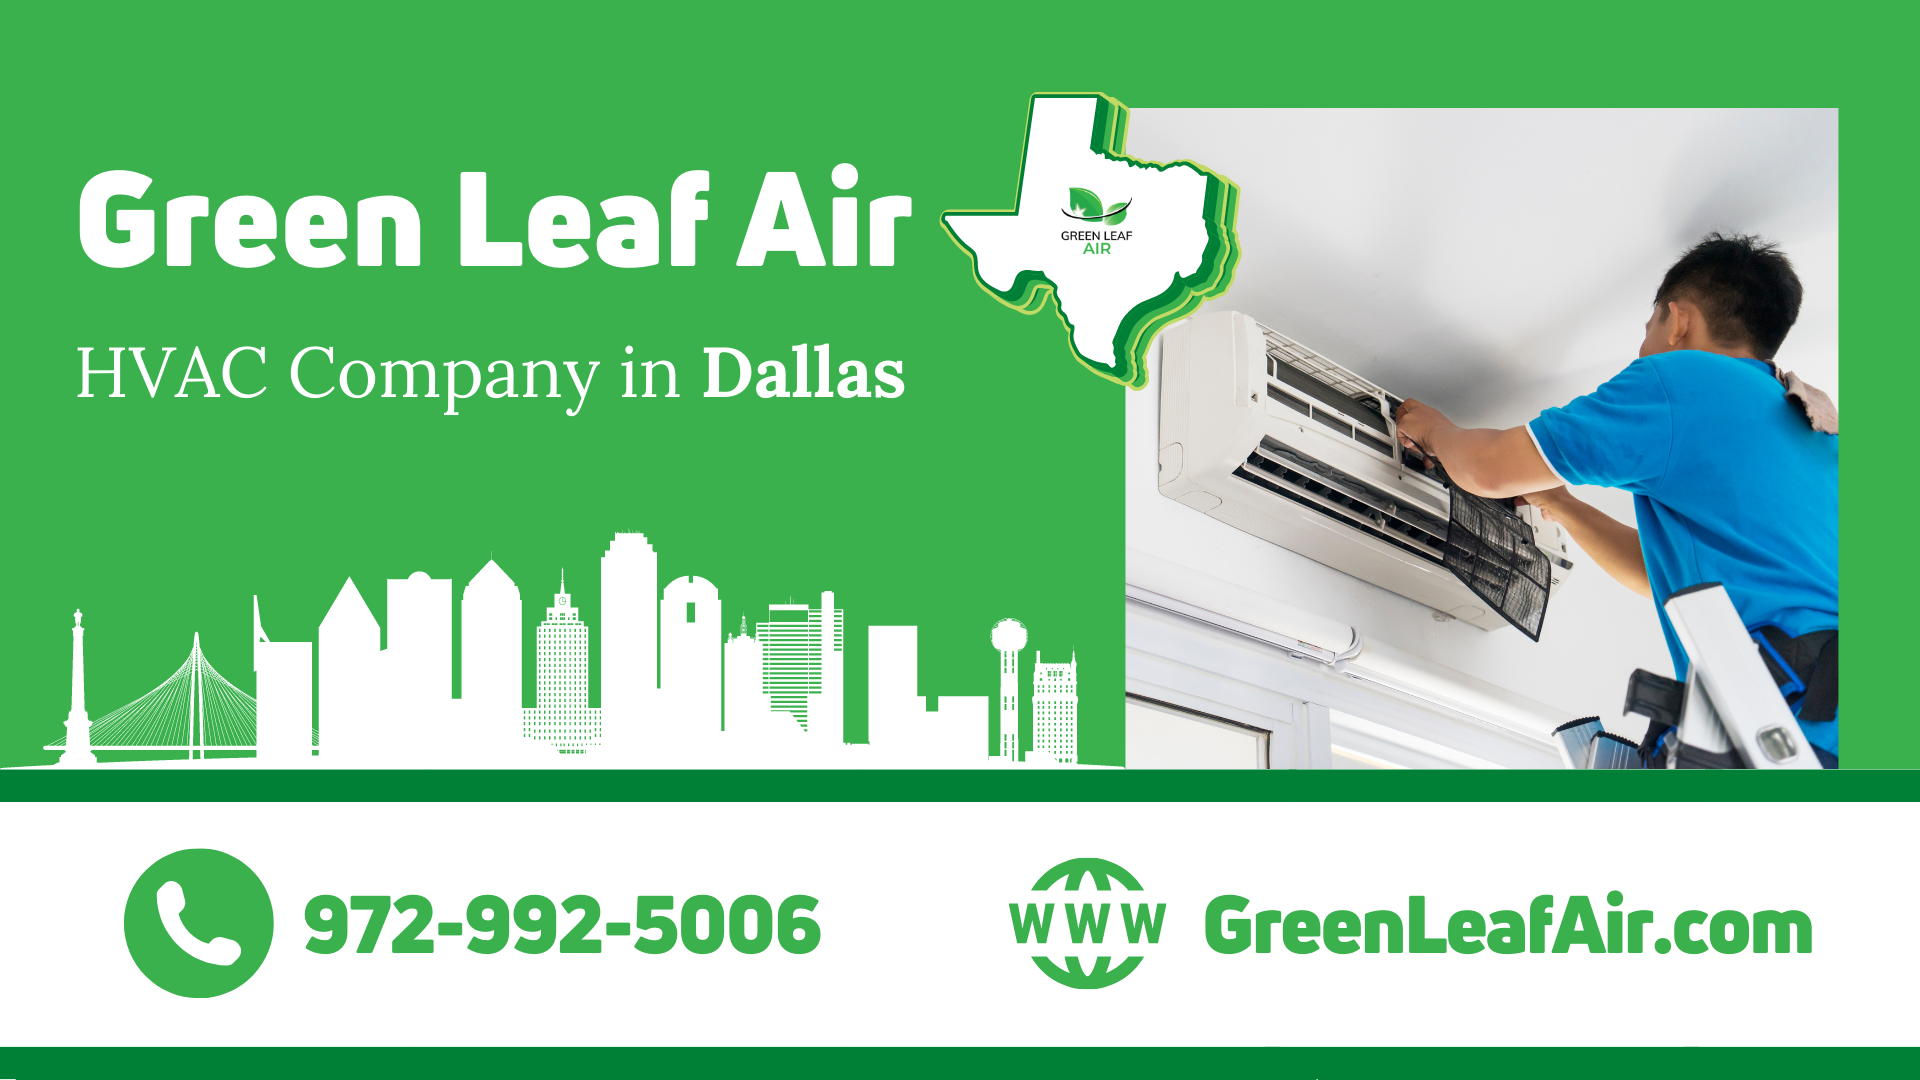 Green Leaf Air - HVAC Company in Dallas